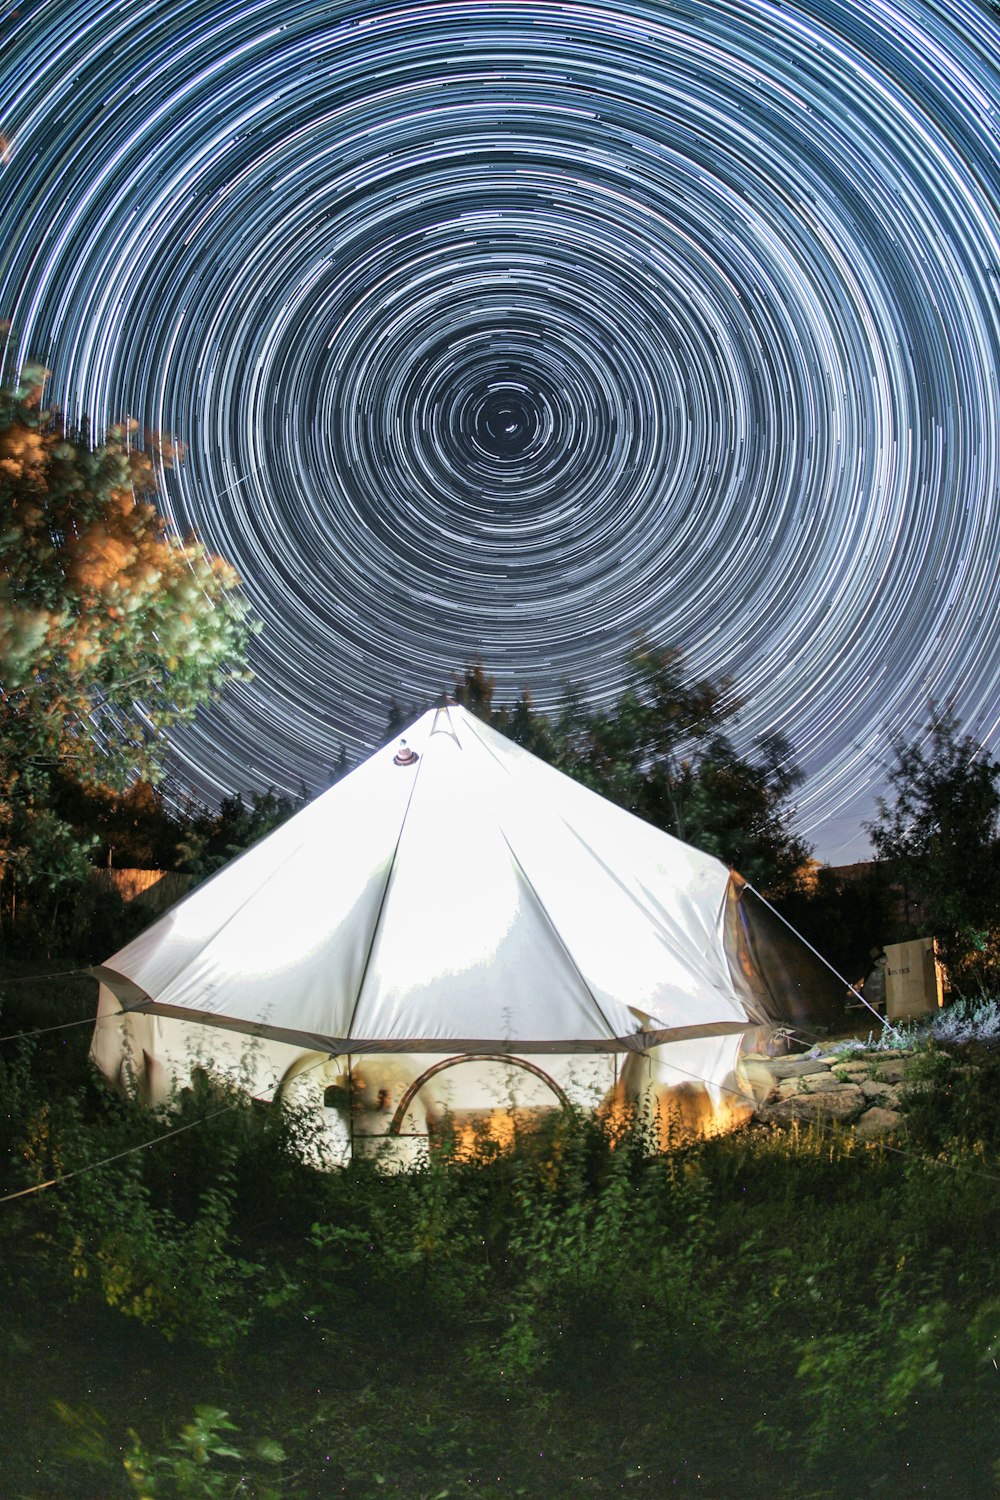 별이 가득한 하늘 아래 숲 한가운데에 앉아있는 커다란 흰색 텐트